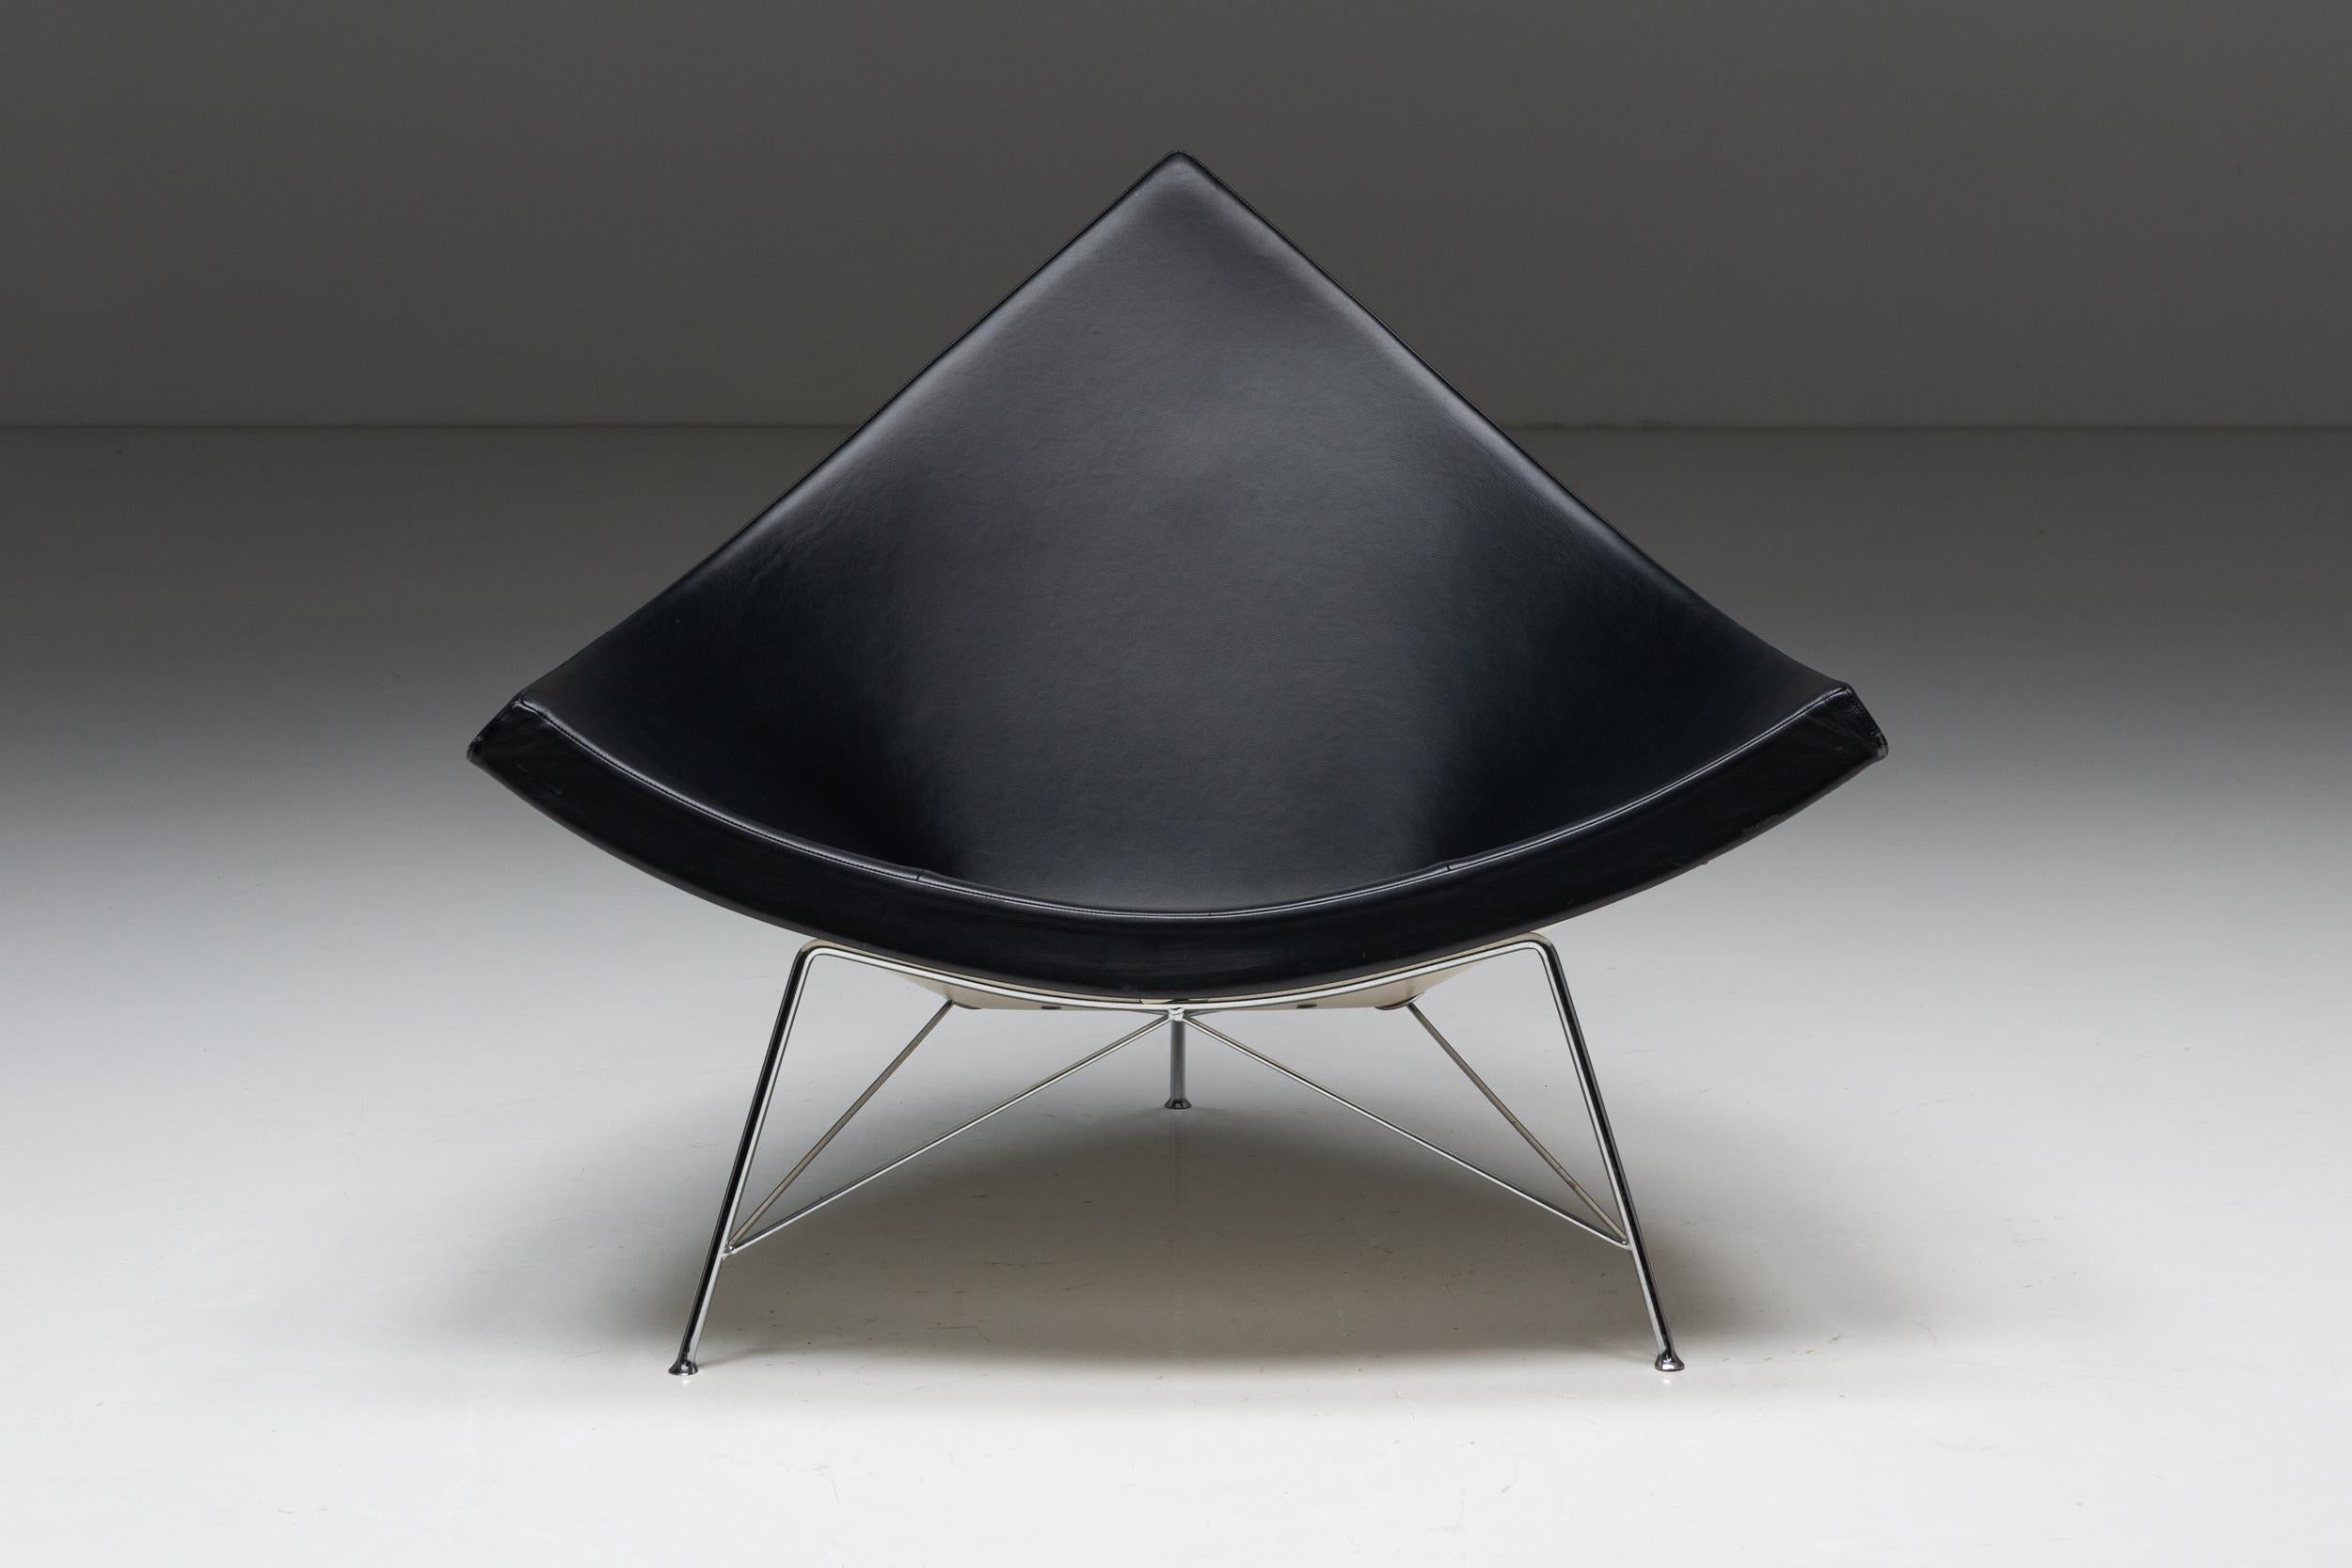 Voici la Coconut Chair de George Nelson pour Vitra, une pièce emblématique du design moderne qui allie confort, élégance et innovation. Conçue à l'origine en 1955, la chaise Coconut est devenue un classique intemporel qui a résisté à l'épreuve du